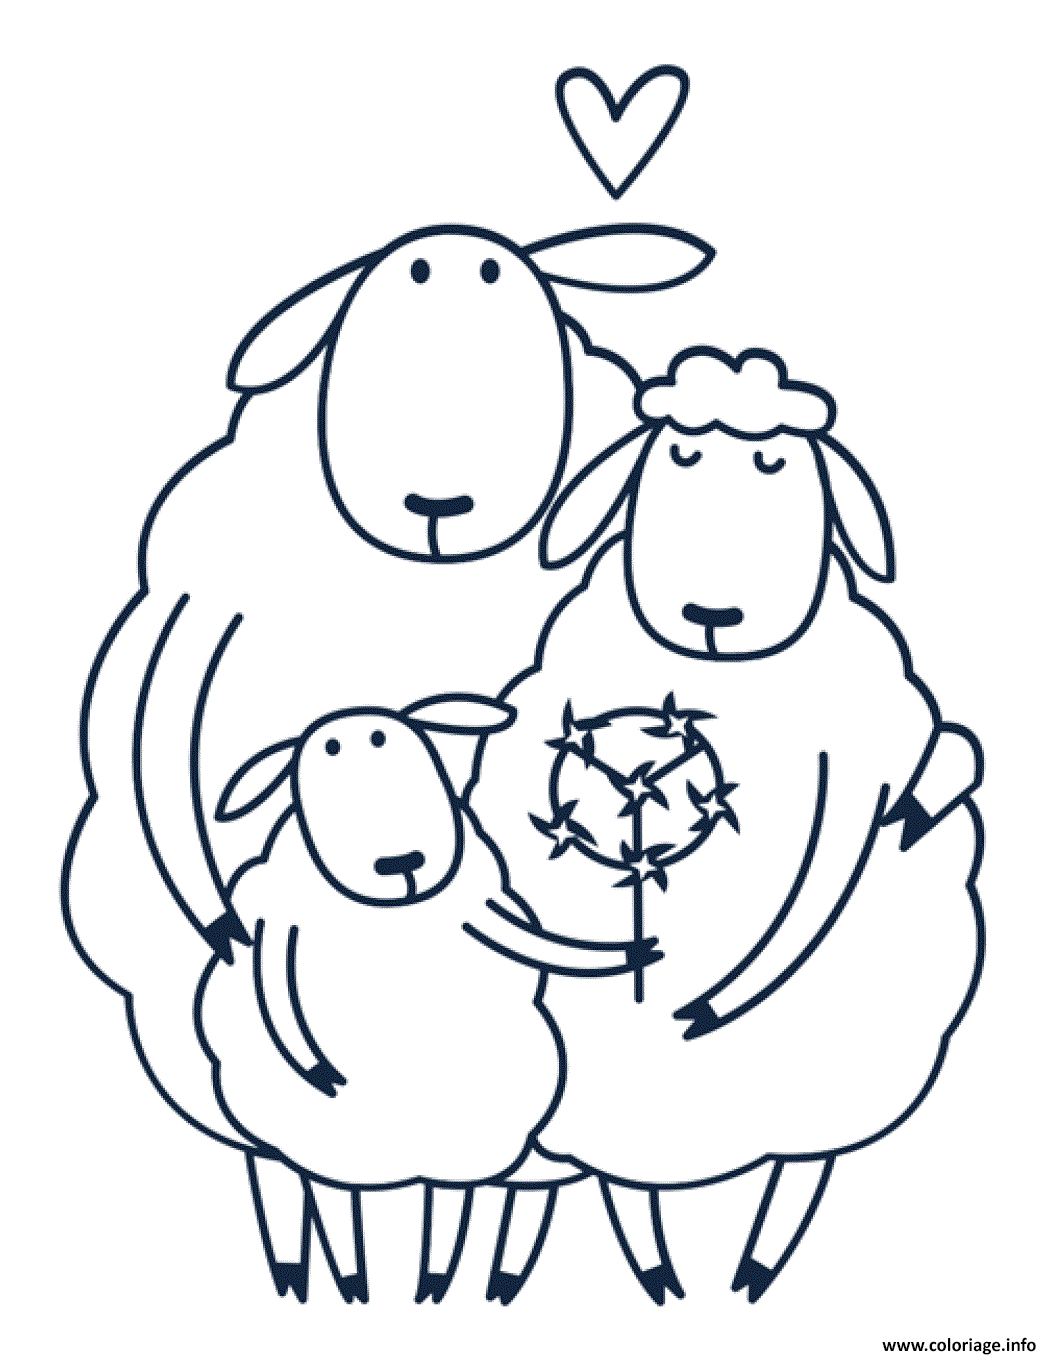 Dessin famille de moutons Coloriage Gratuit à Imprimer